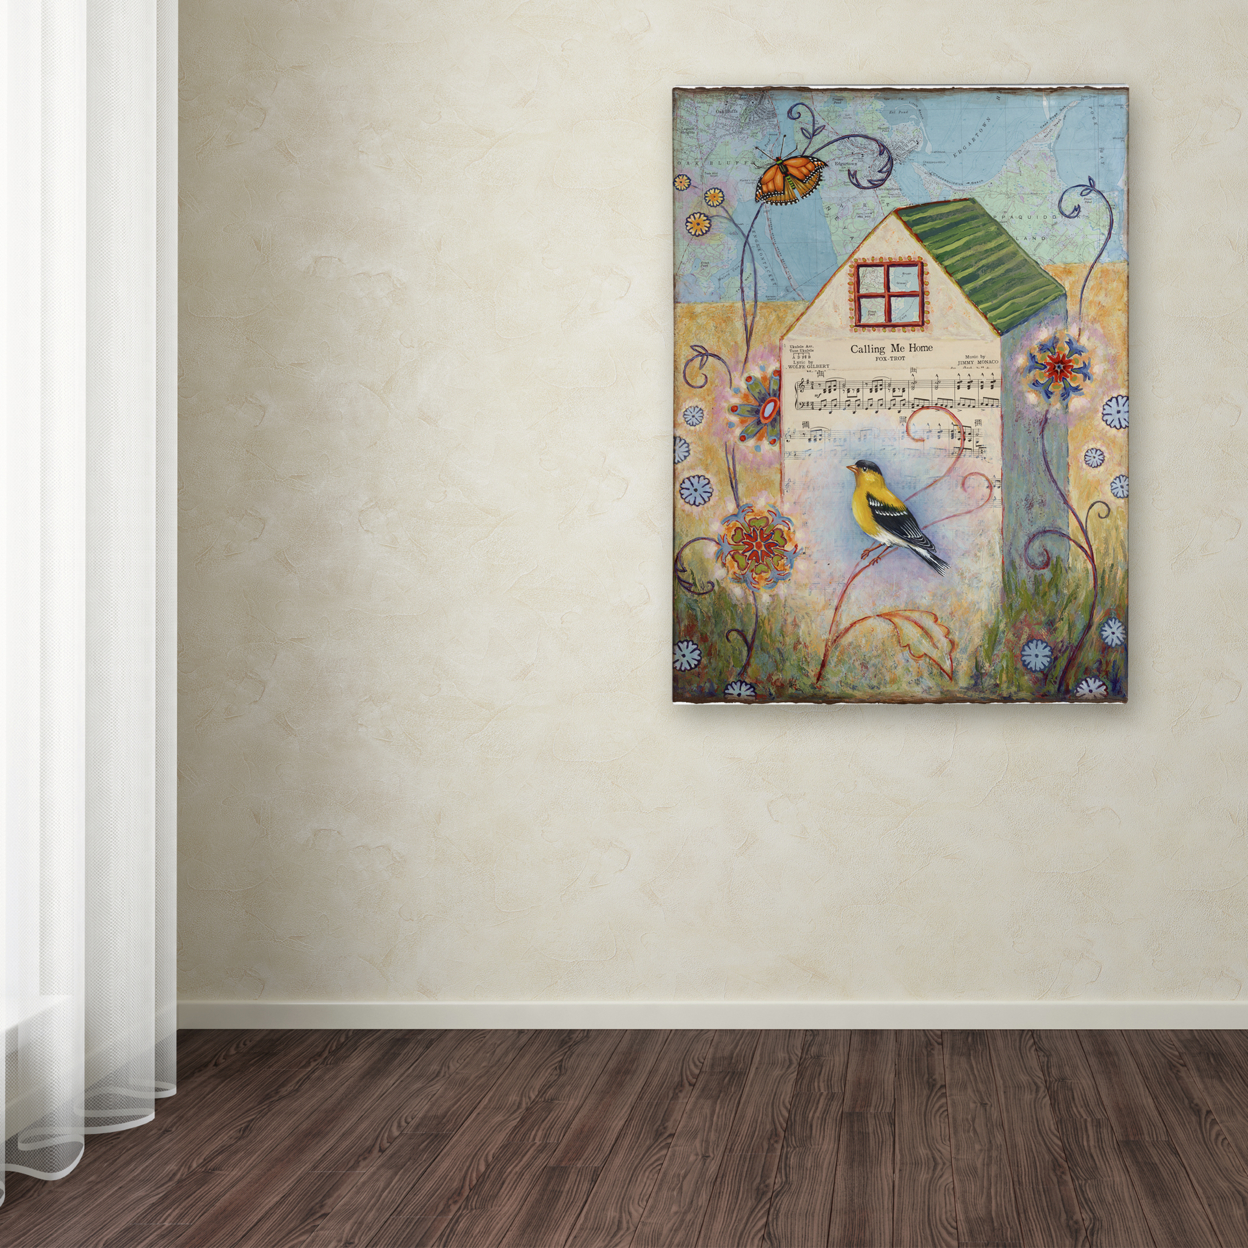 Rachel Paxton 'Home' Canvas Wall Art 35 X 47 Inches